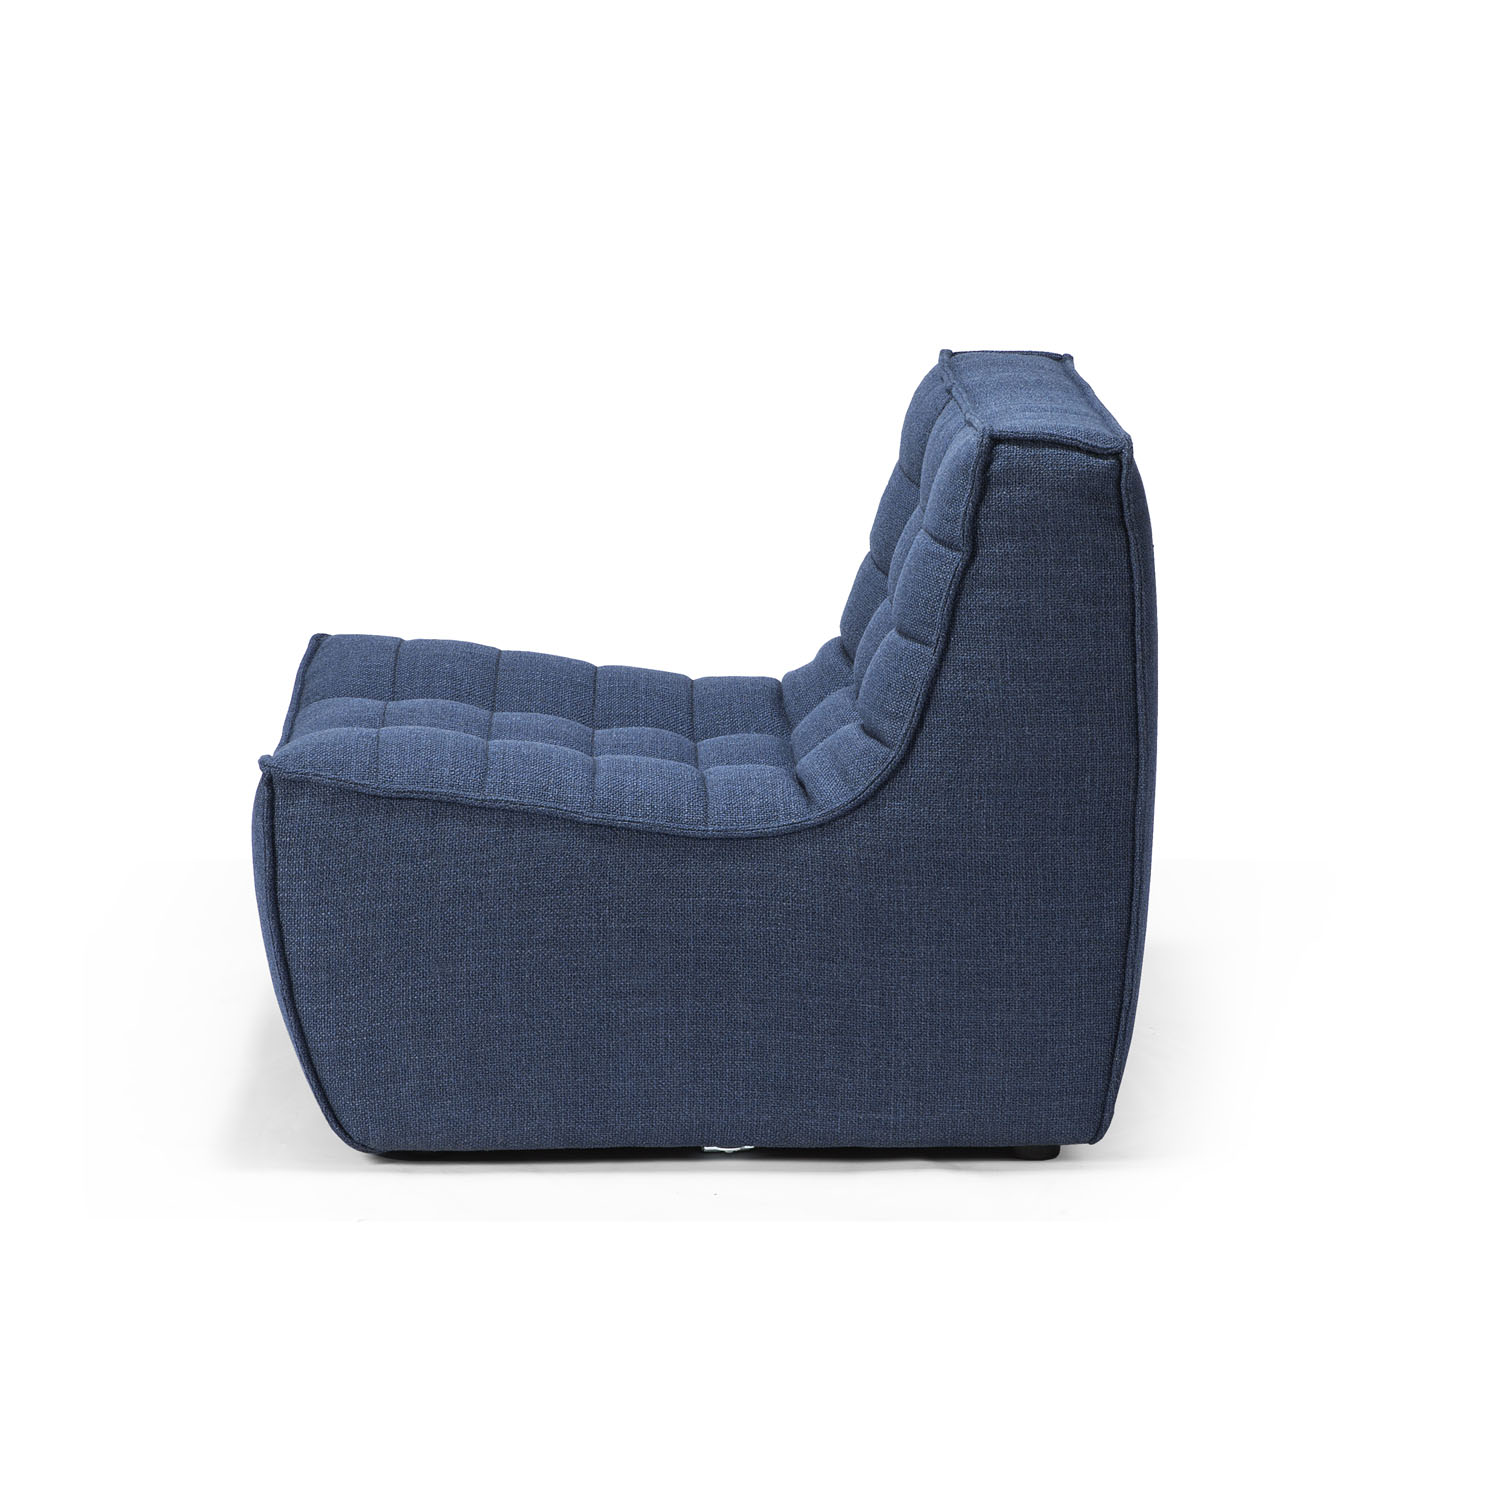 Sofa N701 1 Sitzer in Blau von Ethnicraft 